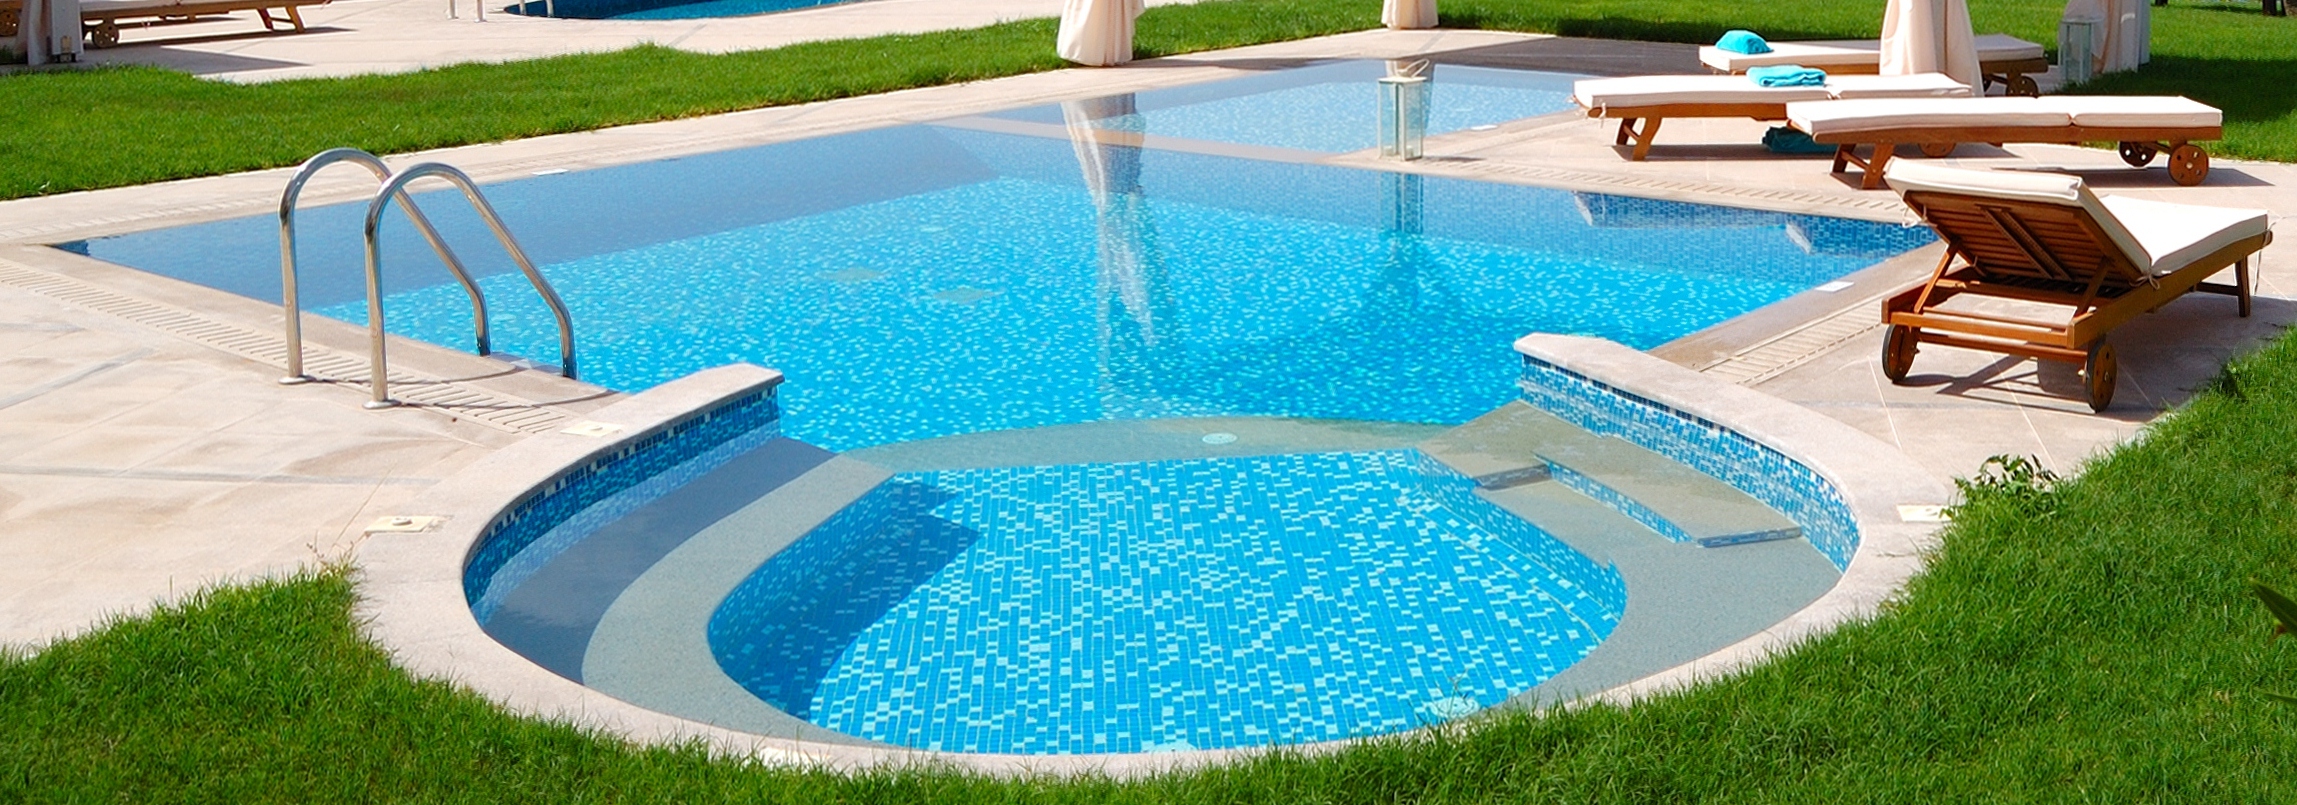 10 dicas para um tratamento de água adequado da piscina